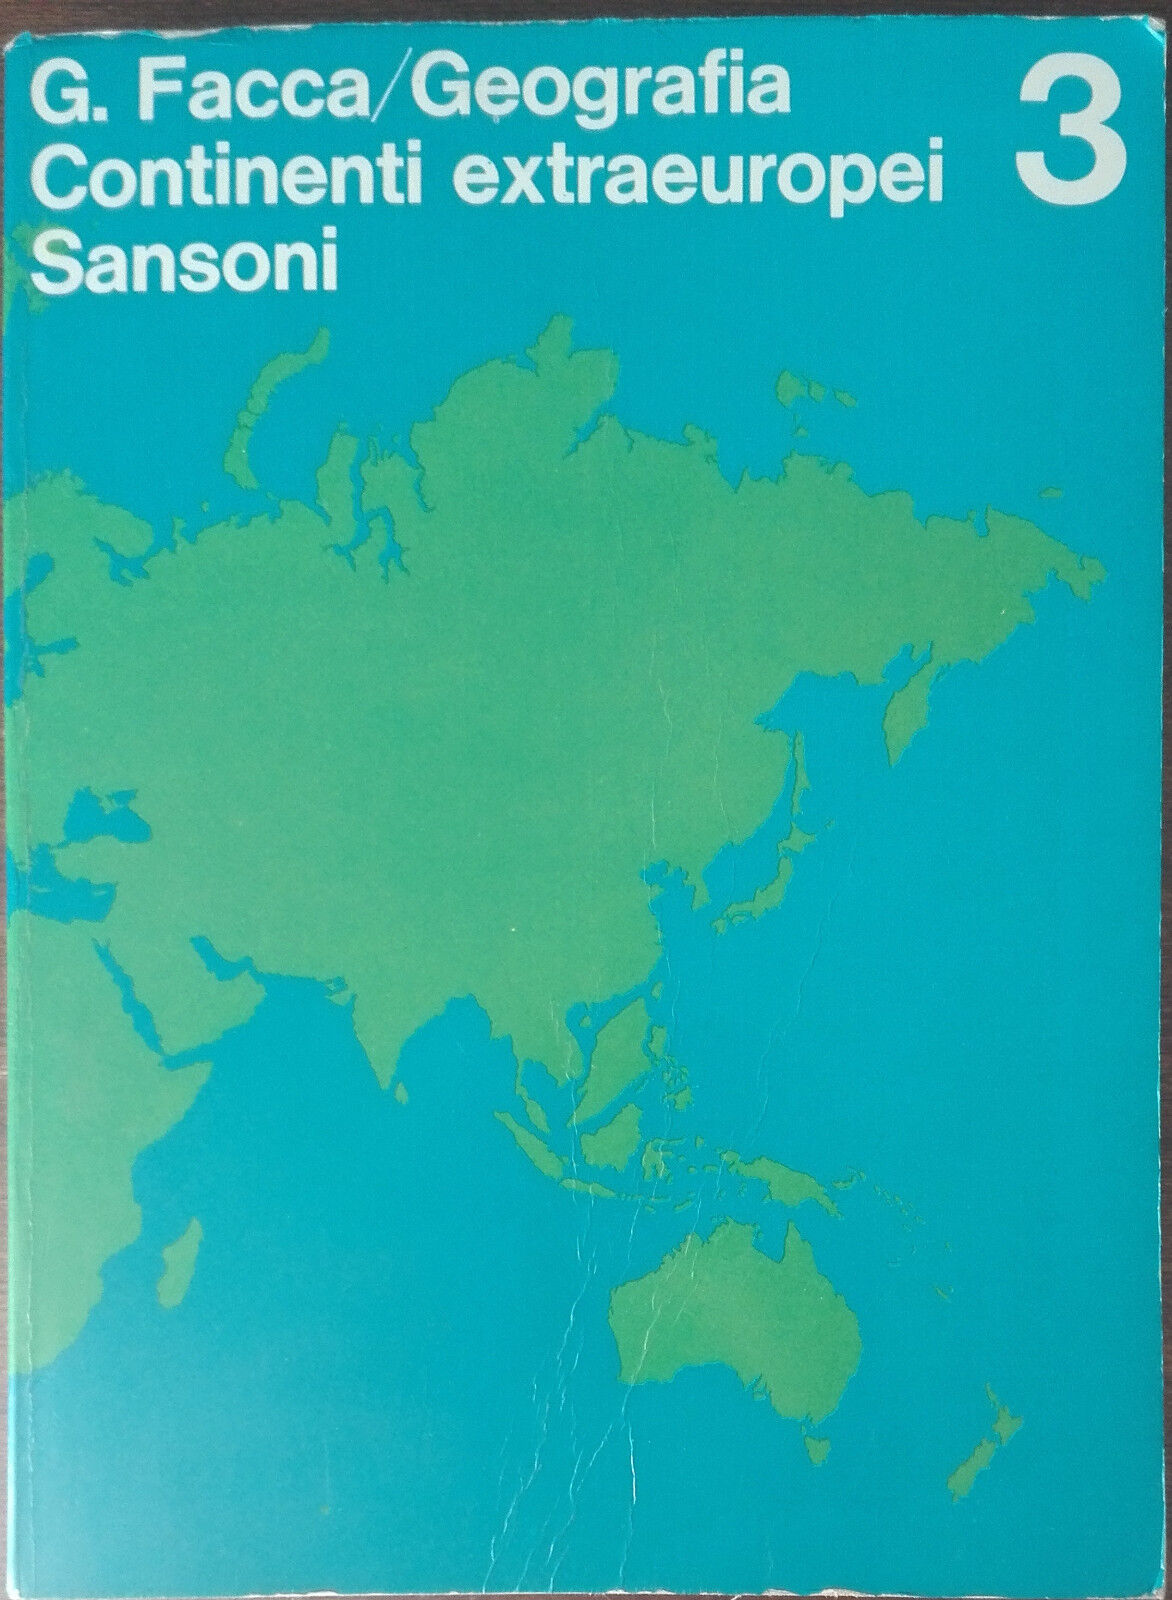 Geografia continenti extraeuropei - G. Facca - Sansoni,1969 - A